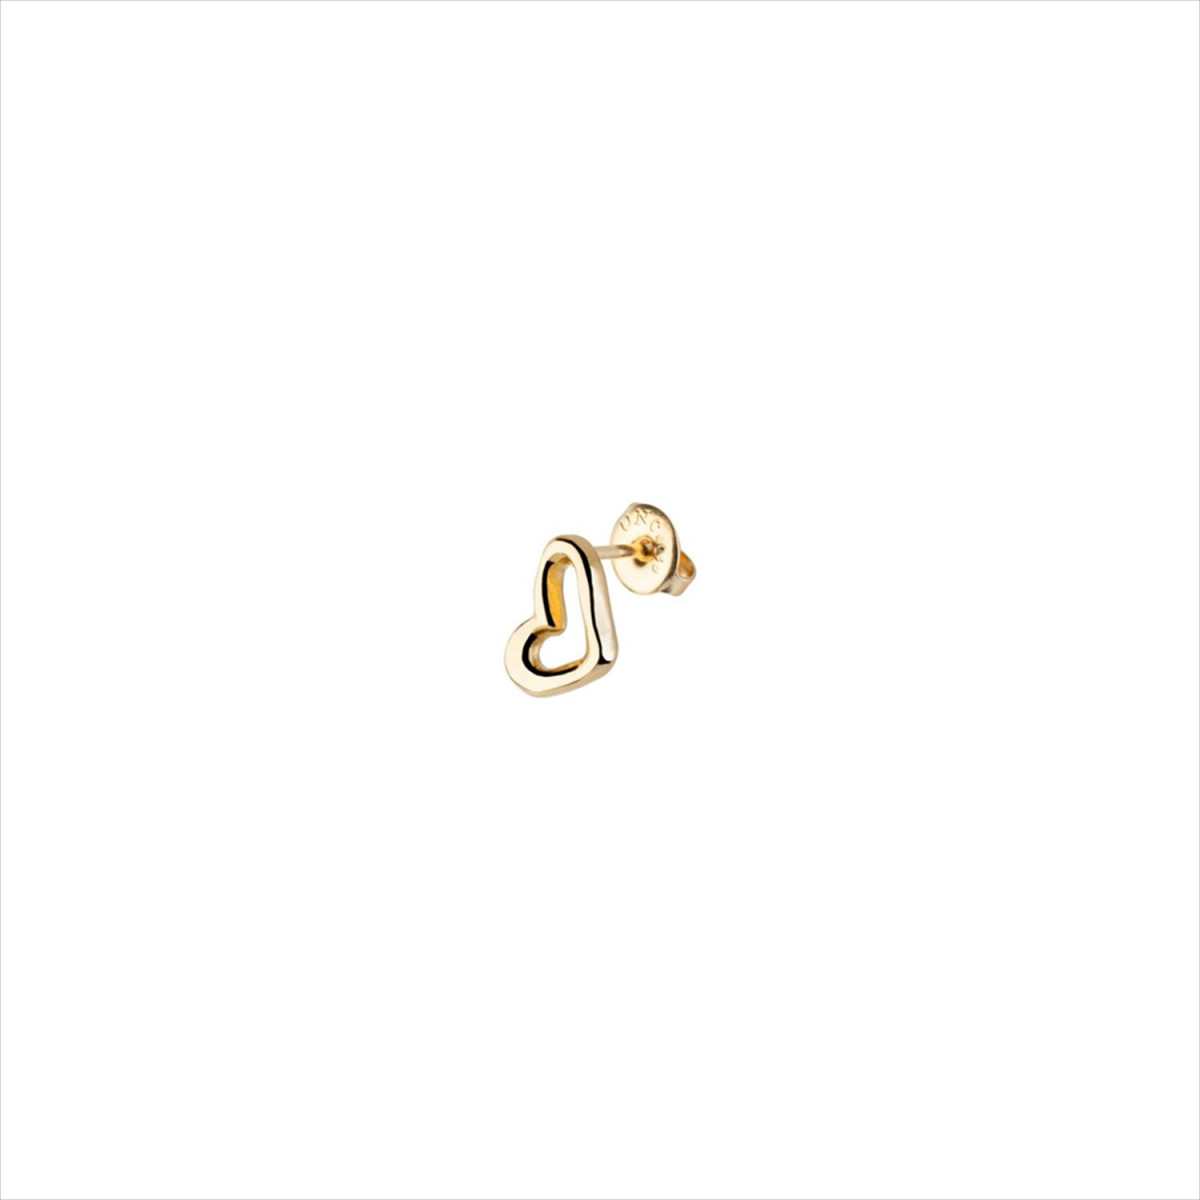 1 Pendiente H´art Stud, tipo piercing. Diseño corazón. Metal bañado en oro. Uno de 50